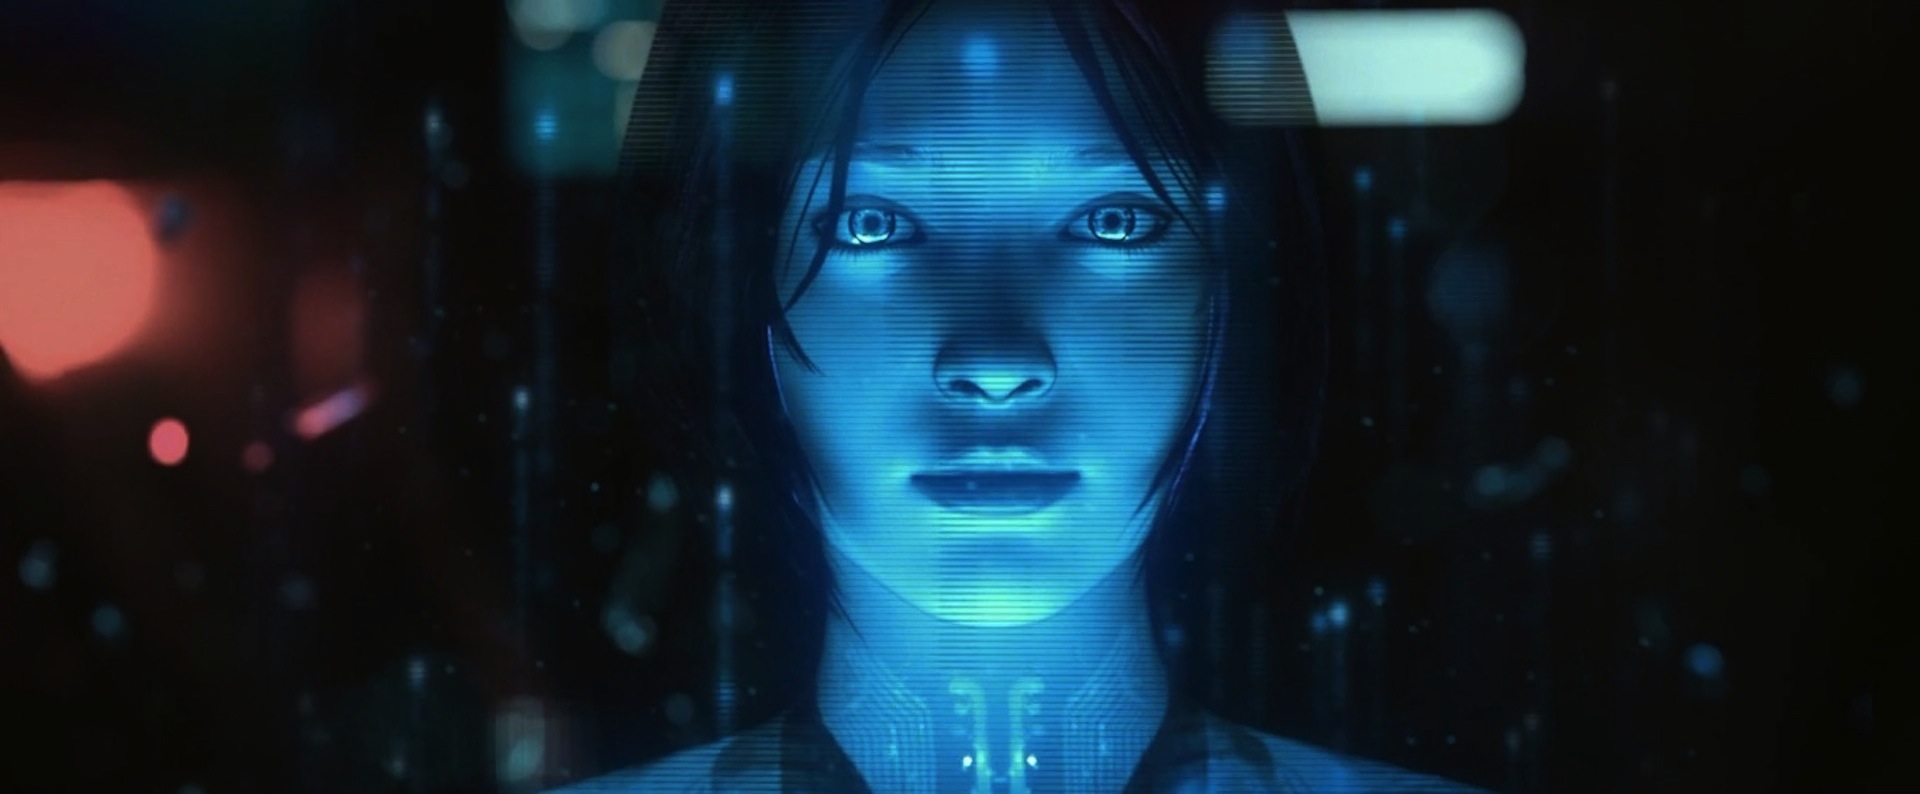 FUD-Cortana-Closeup.jpg